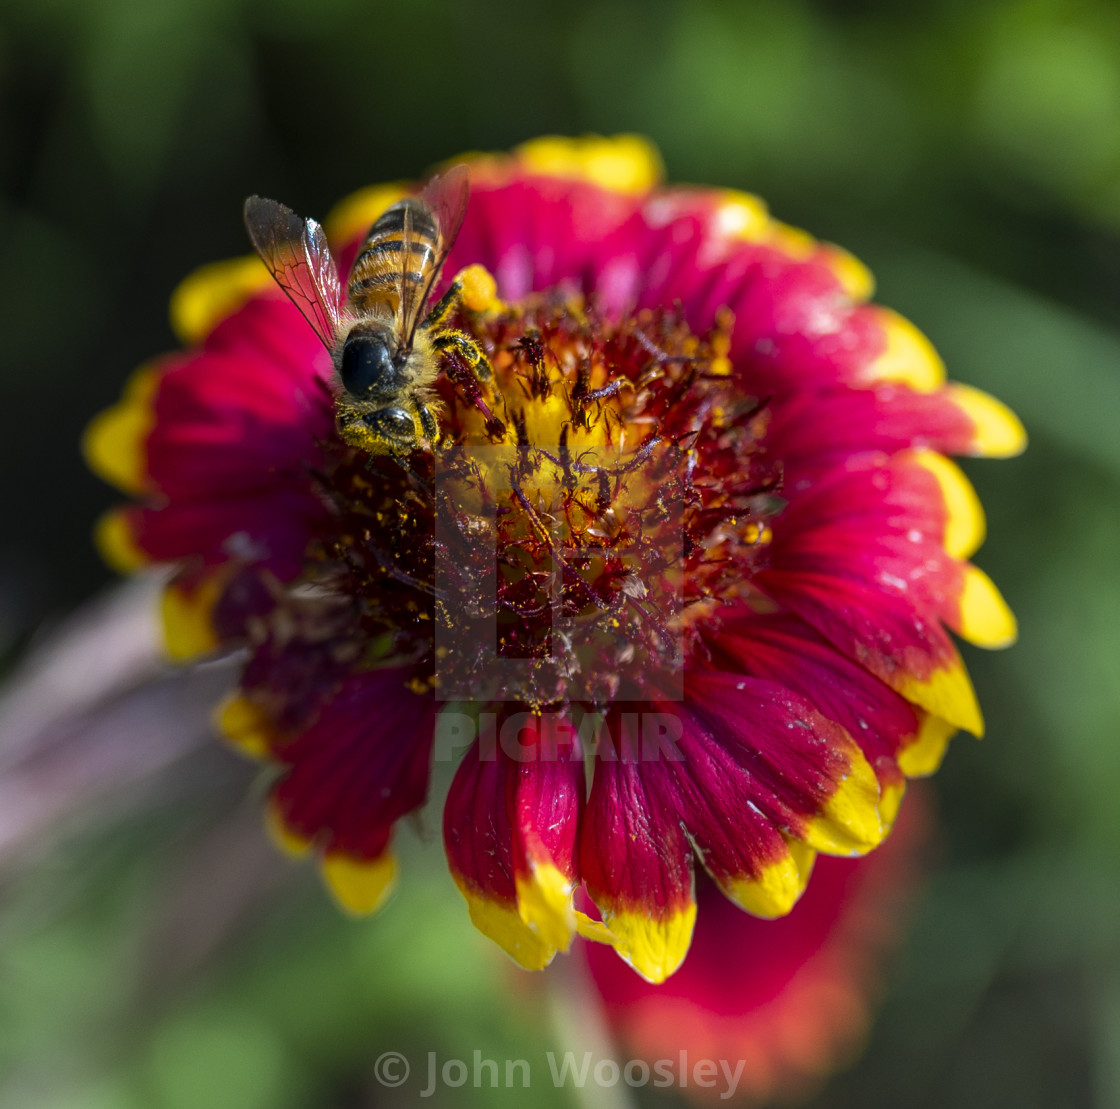 "Bee getting pollen" stock image